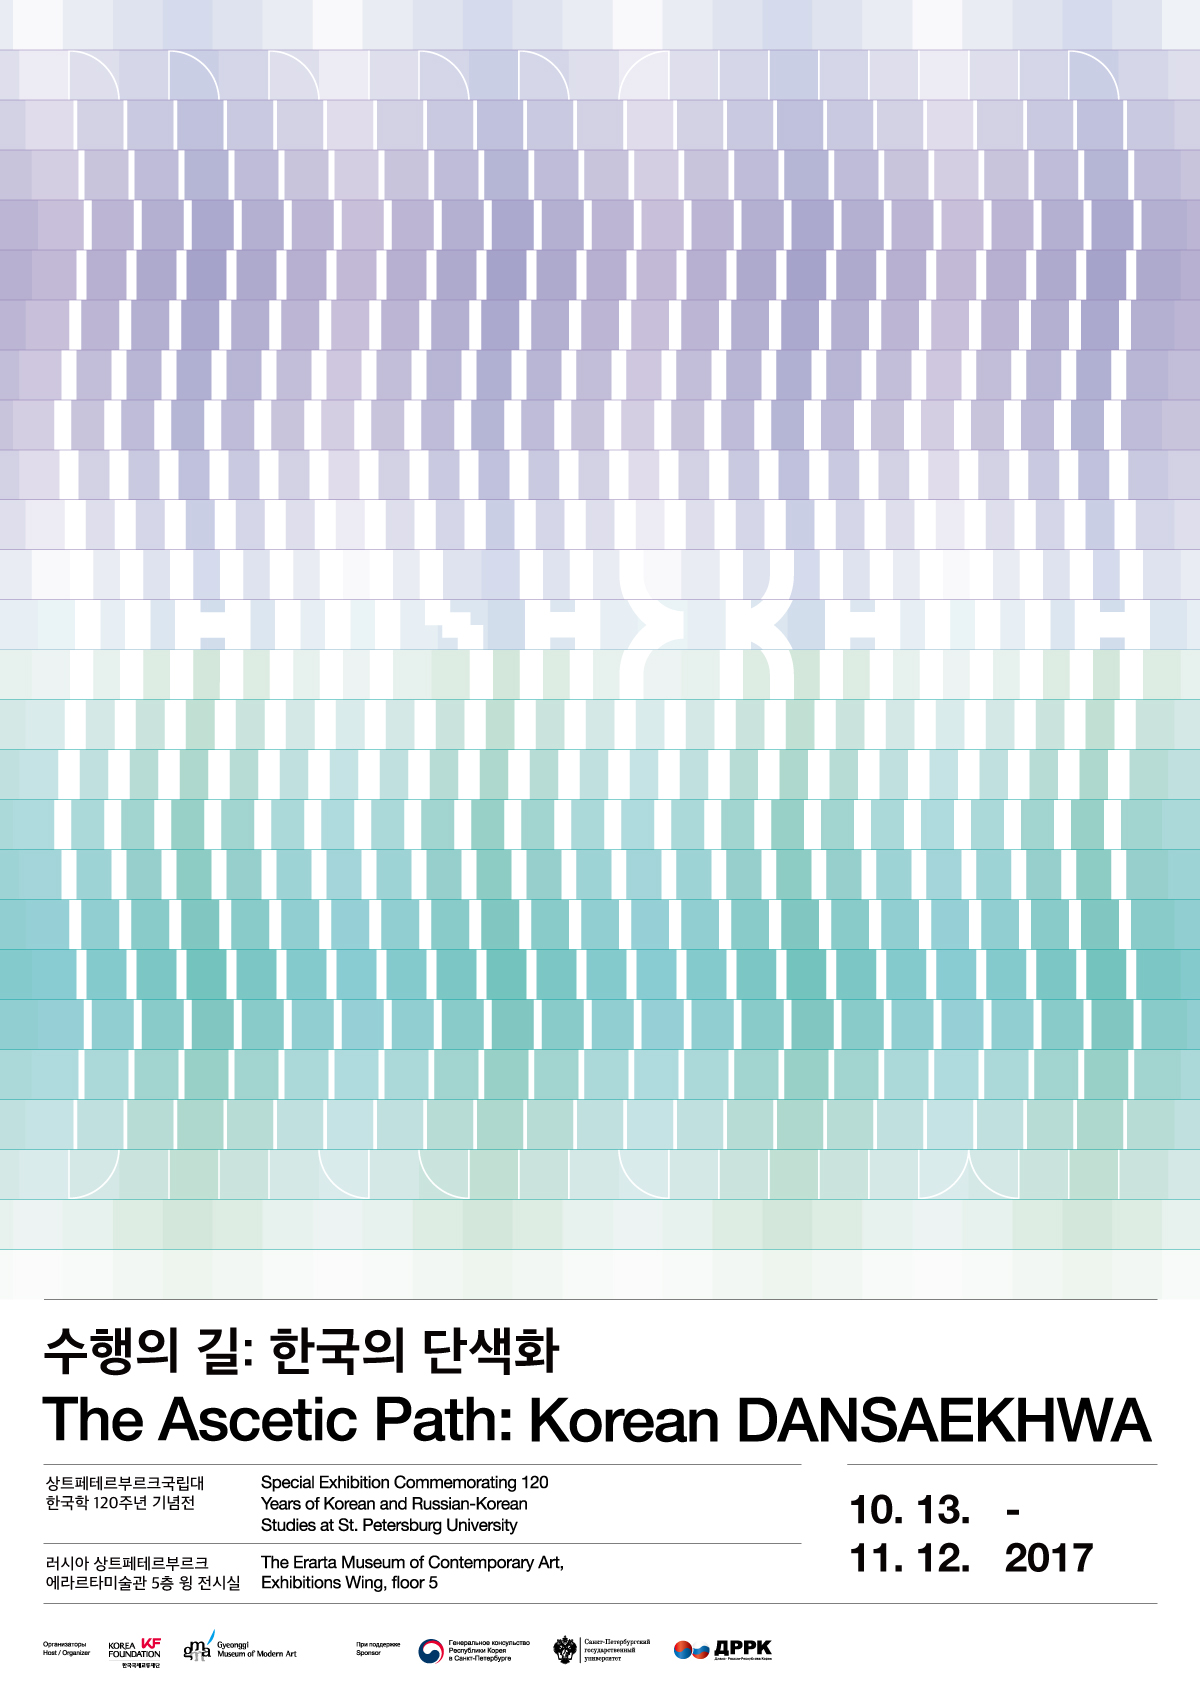 The Ascetic Path: Korean DANSAEKHWA